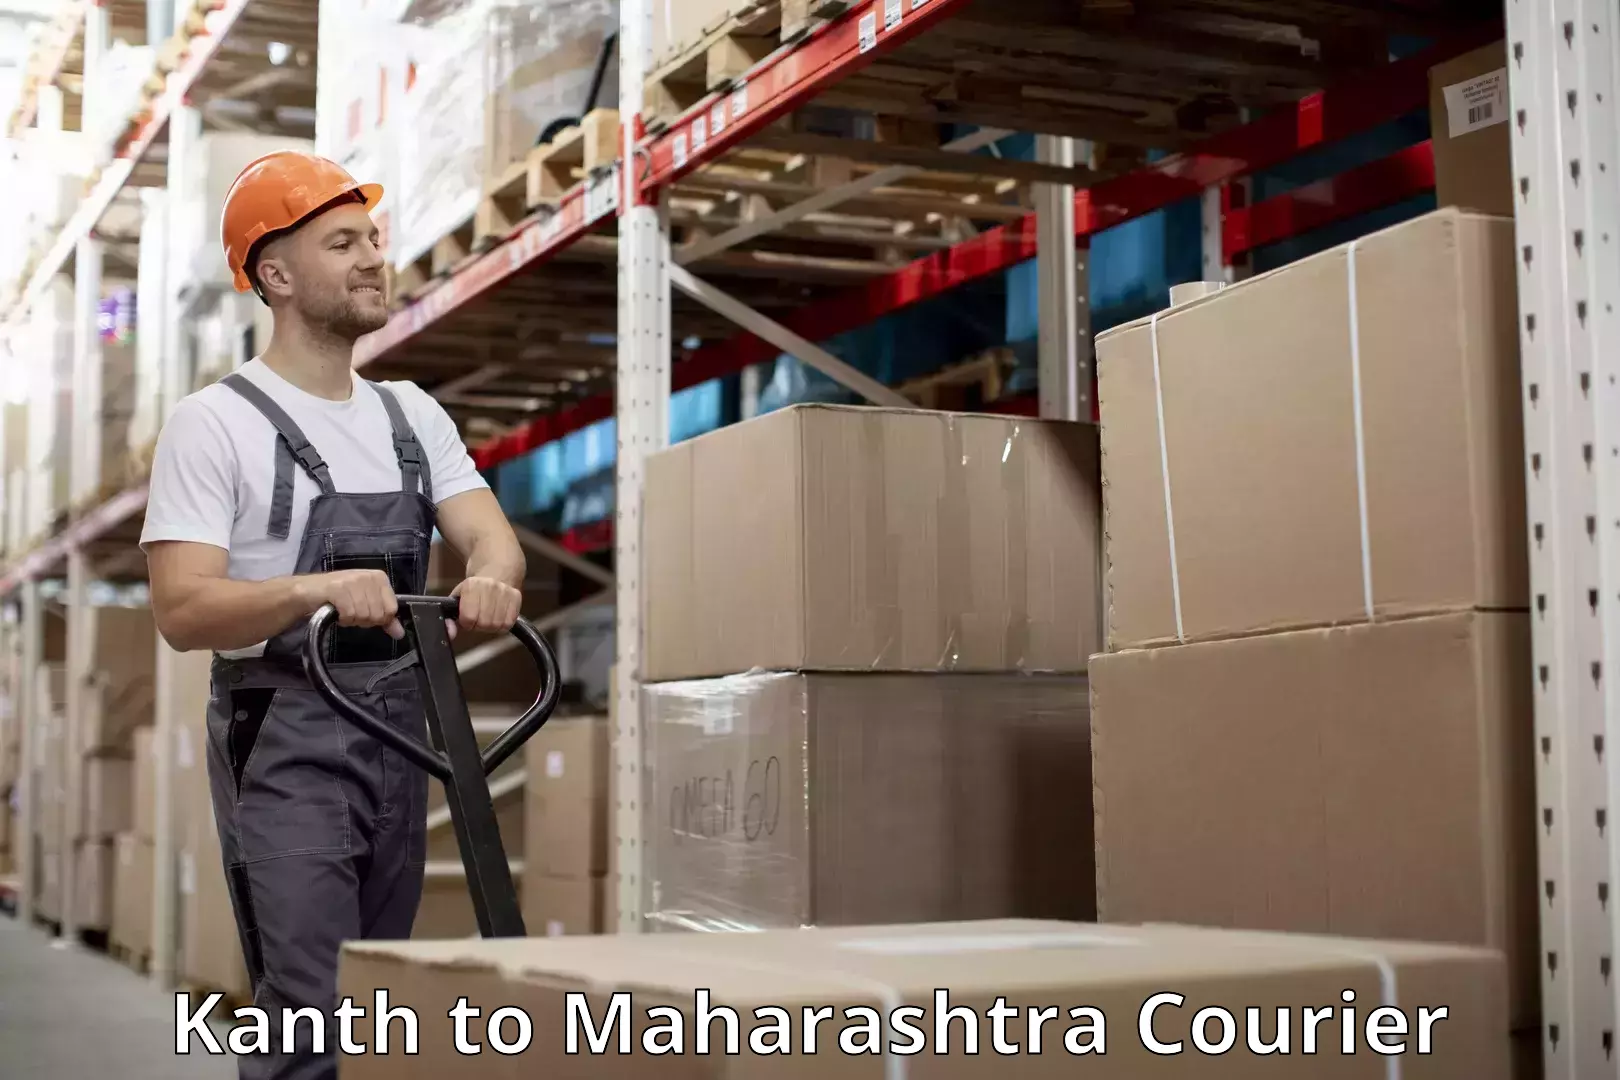 Luggage shipment tracking Kanth to Maharashtra